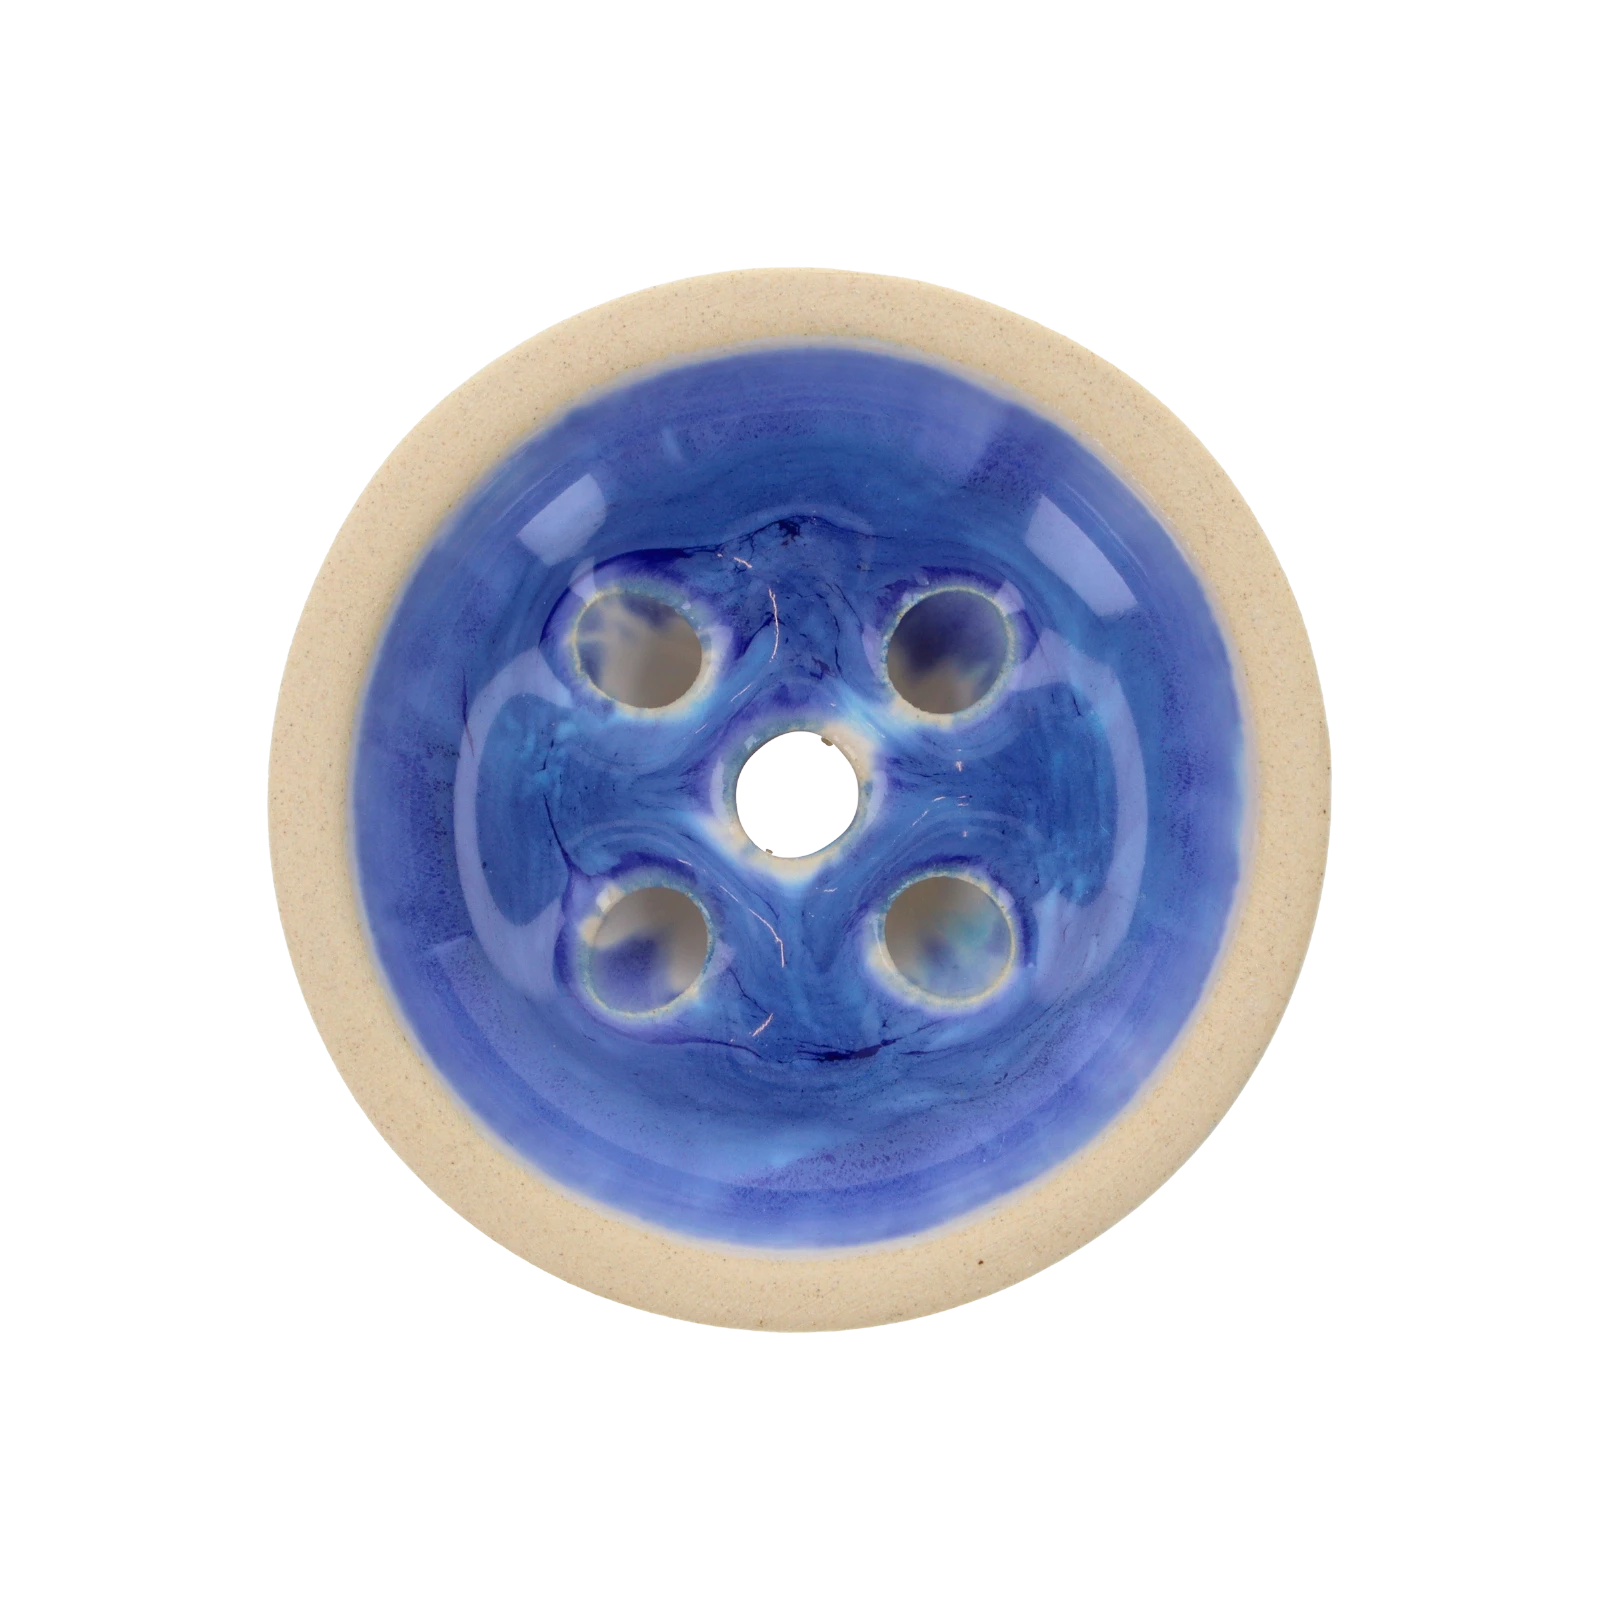 Pot - 5 Hole - Blue Bubble